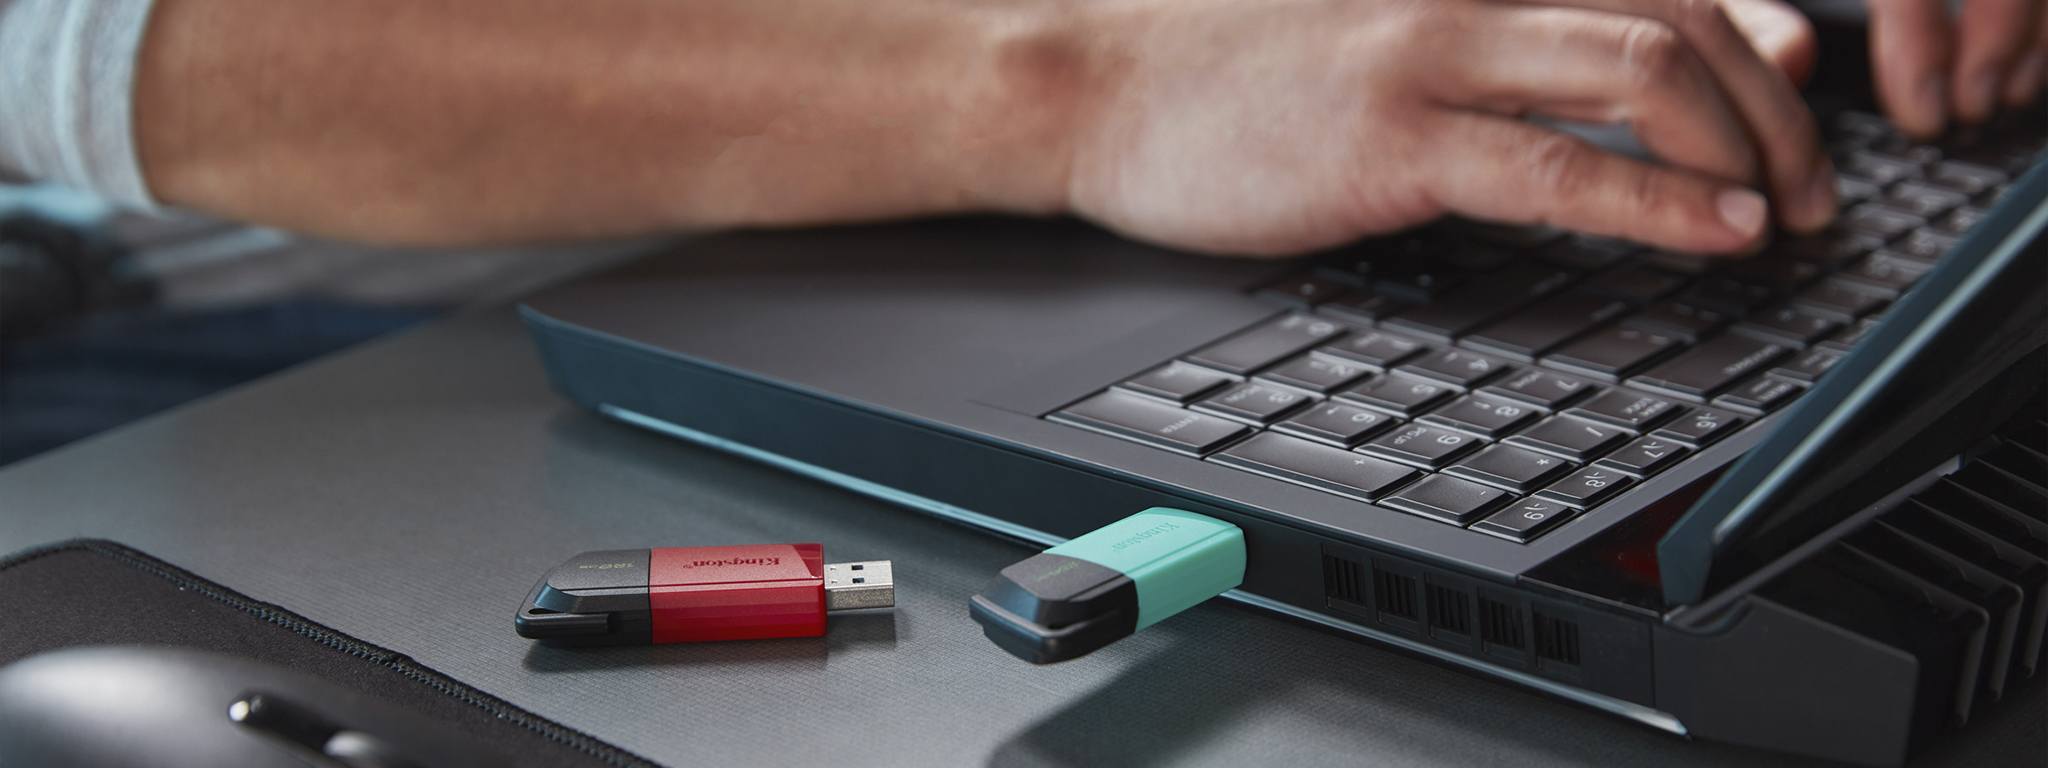 兩個分別是綠蓋和紅蓋的 DT Exodia M USB 隨身碟放在桌子邊緣，背景是一個人在使用筆記型電腦